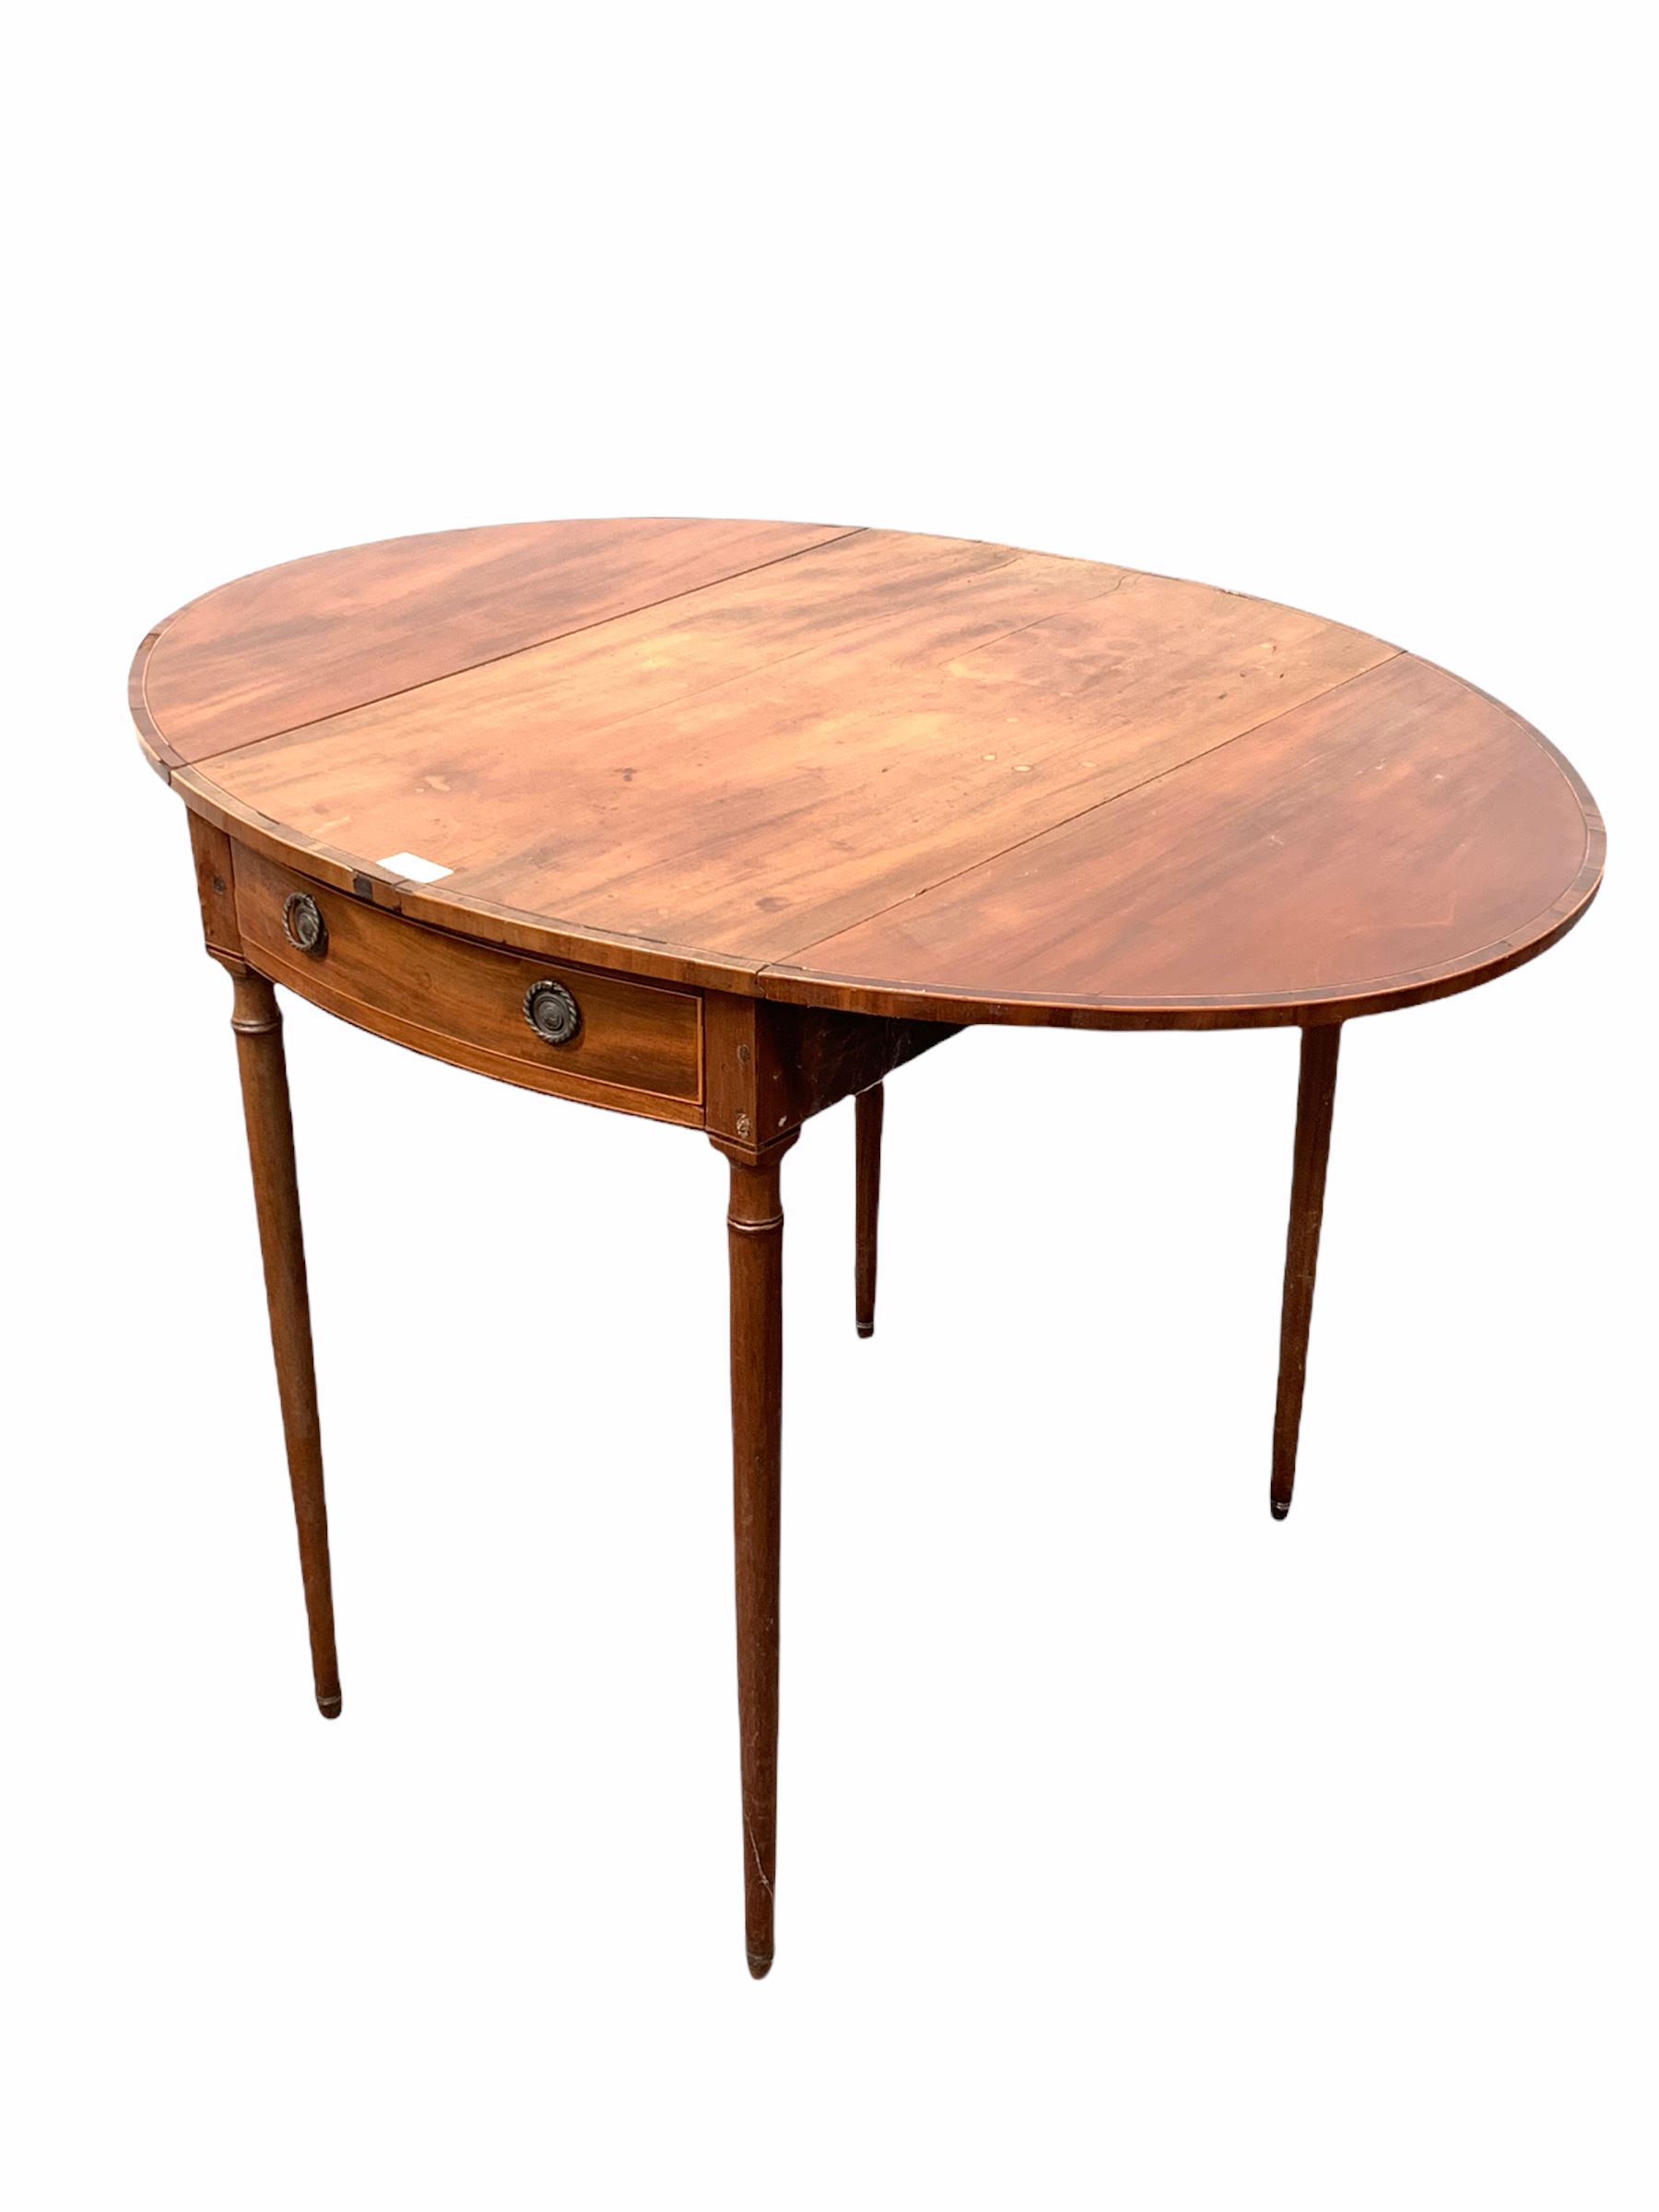 Early 19th century mahogany Pembroke table - Image 2 of 2